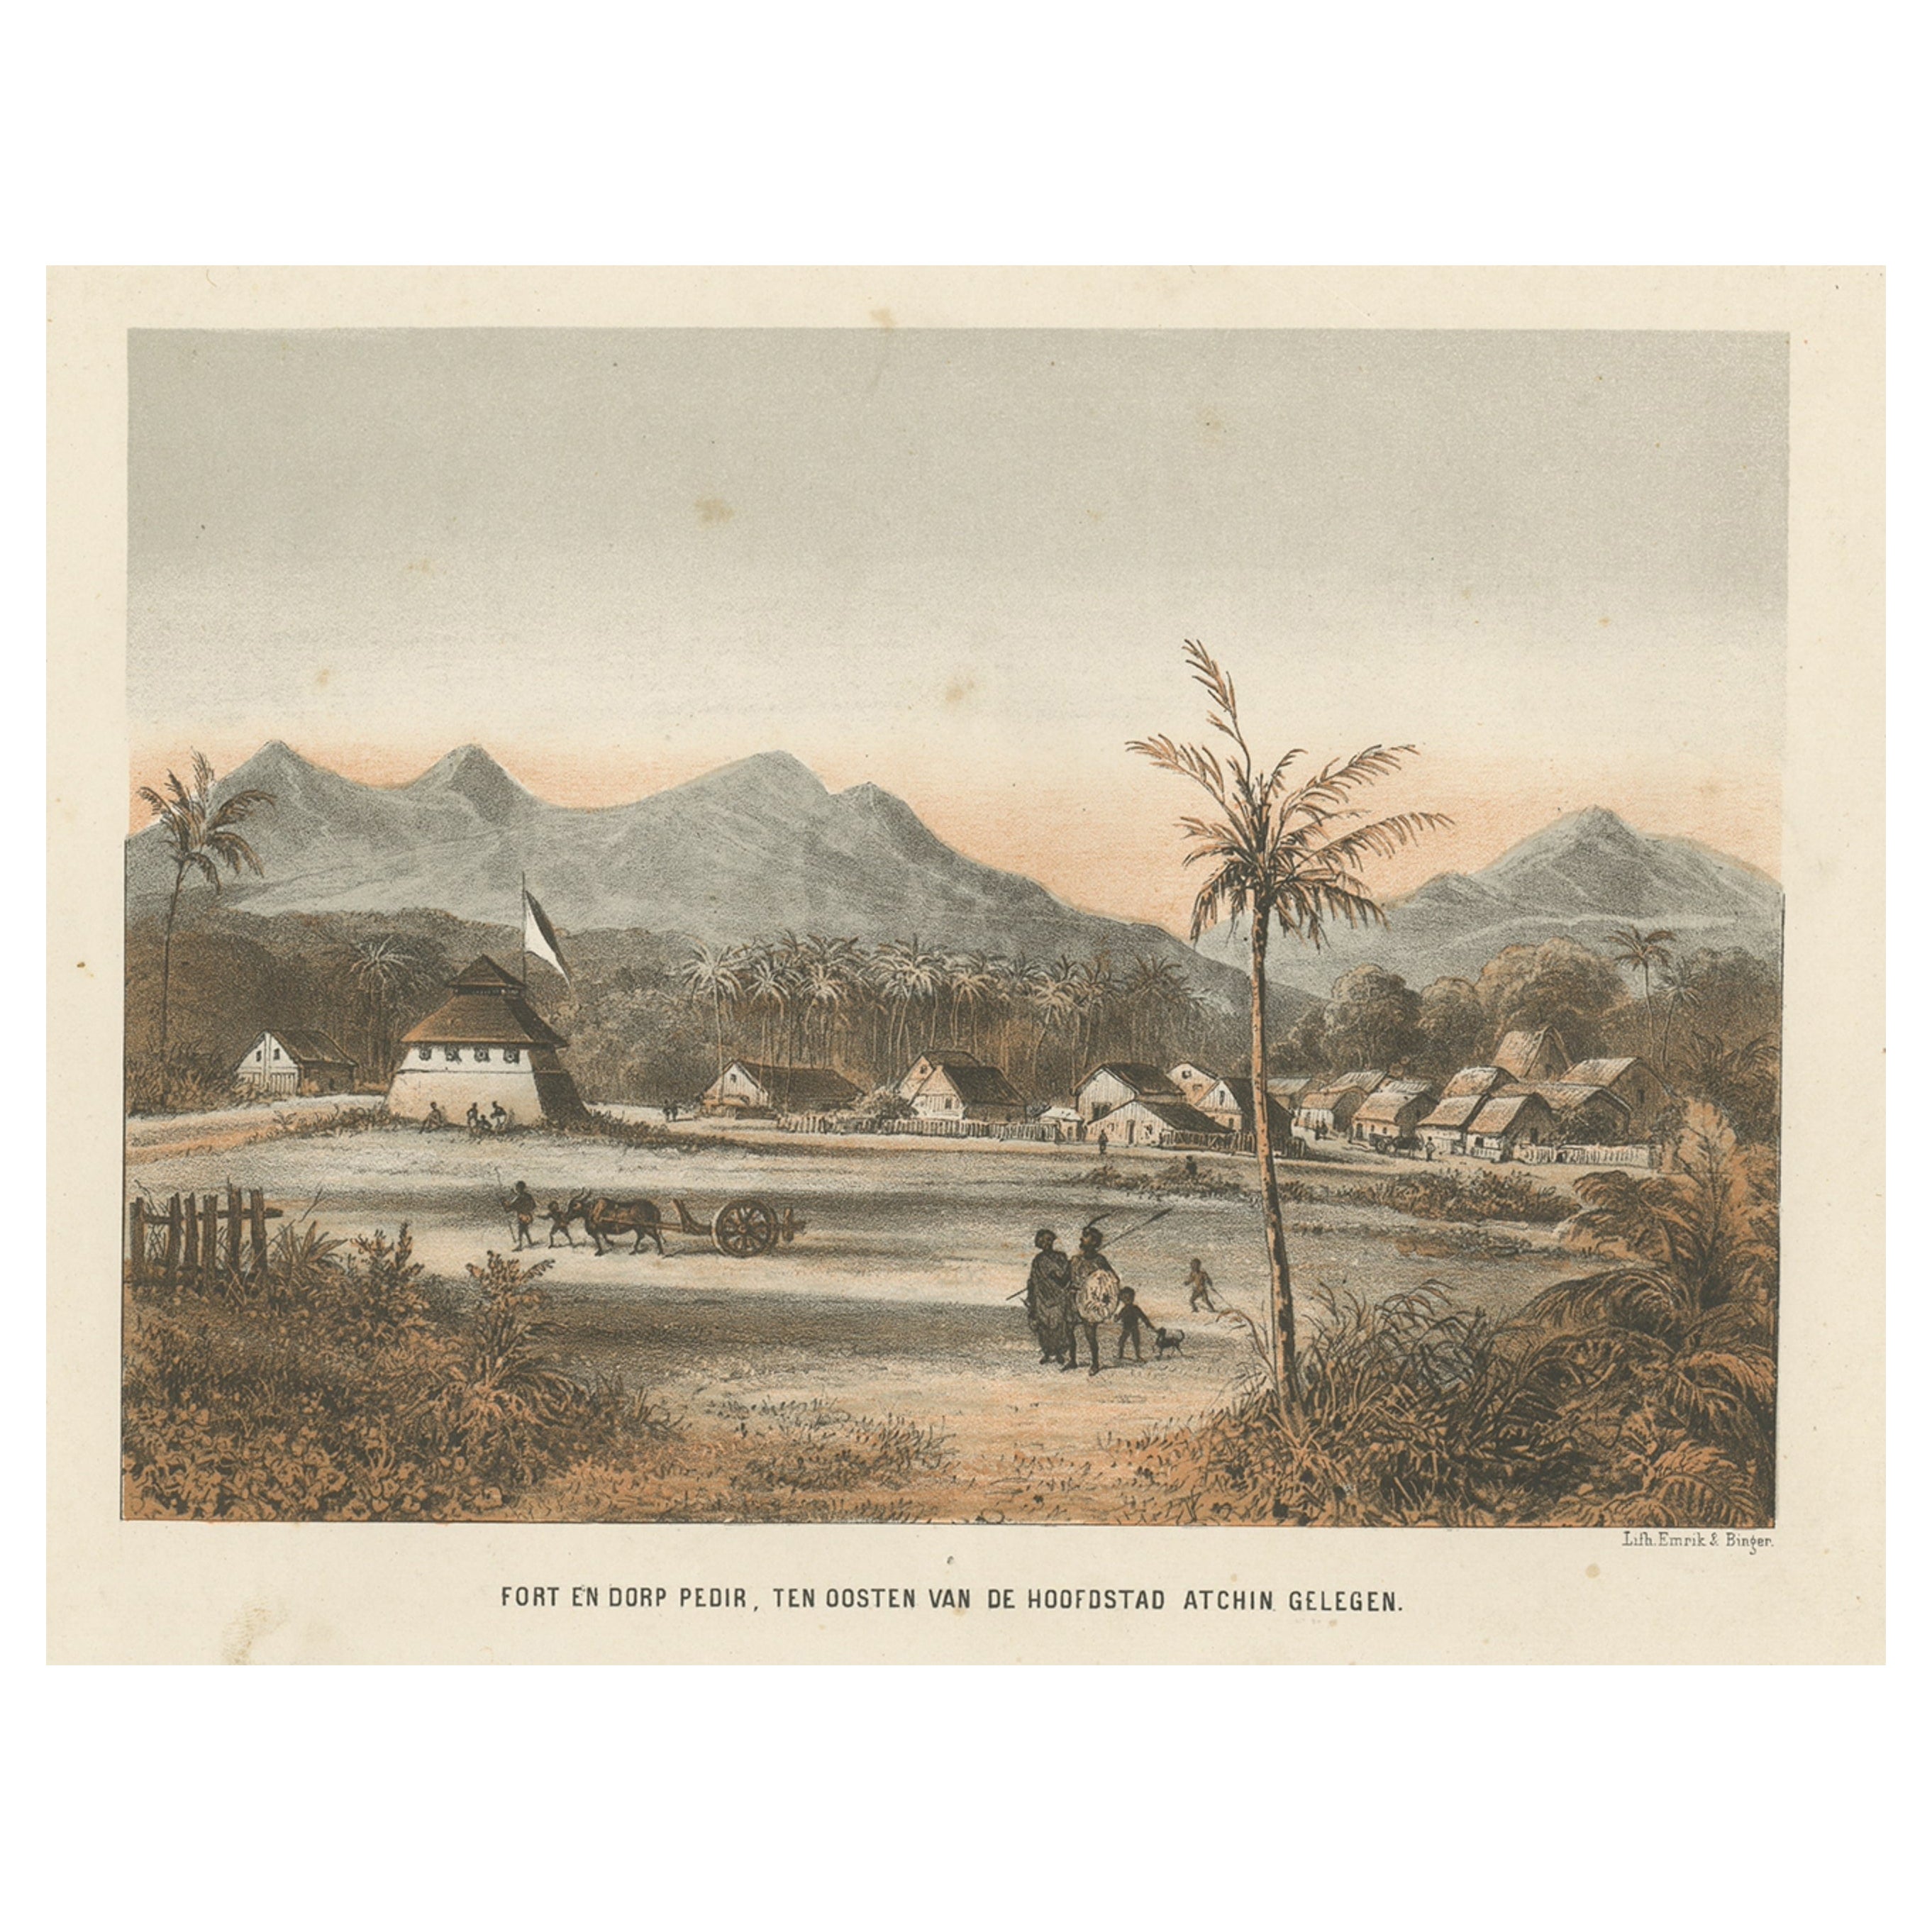 Schöne antike asiatische Dorfansicht in Aceh, Sumatra, Indonesien, 1874